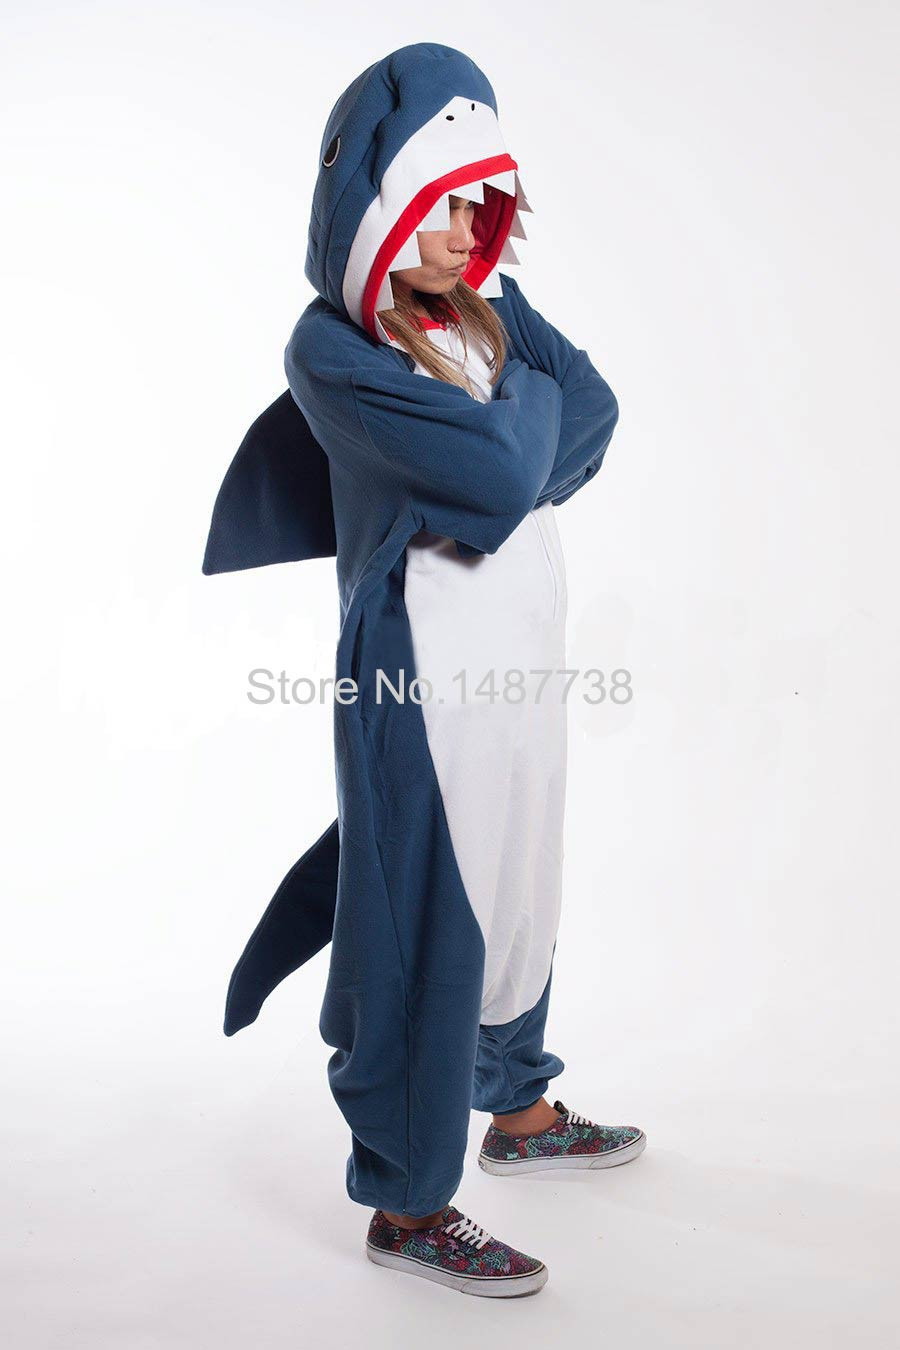 Best ideas about DIY Adult Onesie
. Save or Pin Kigurumi Adult esies Uni Fleece Animal Shark Pajamas Now.